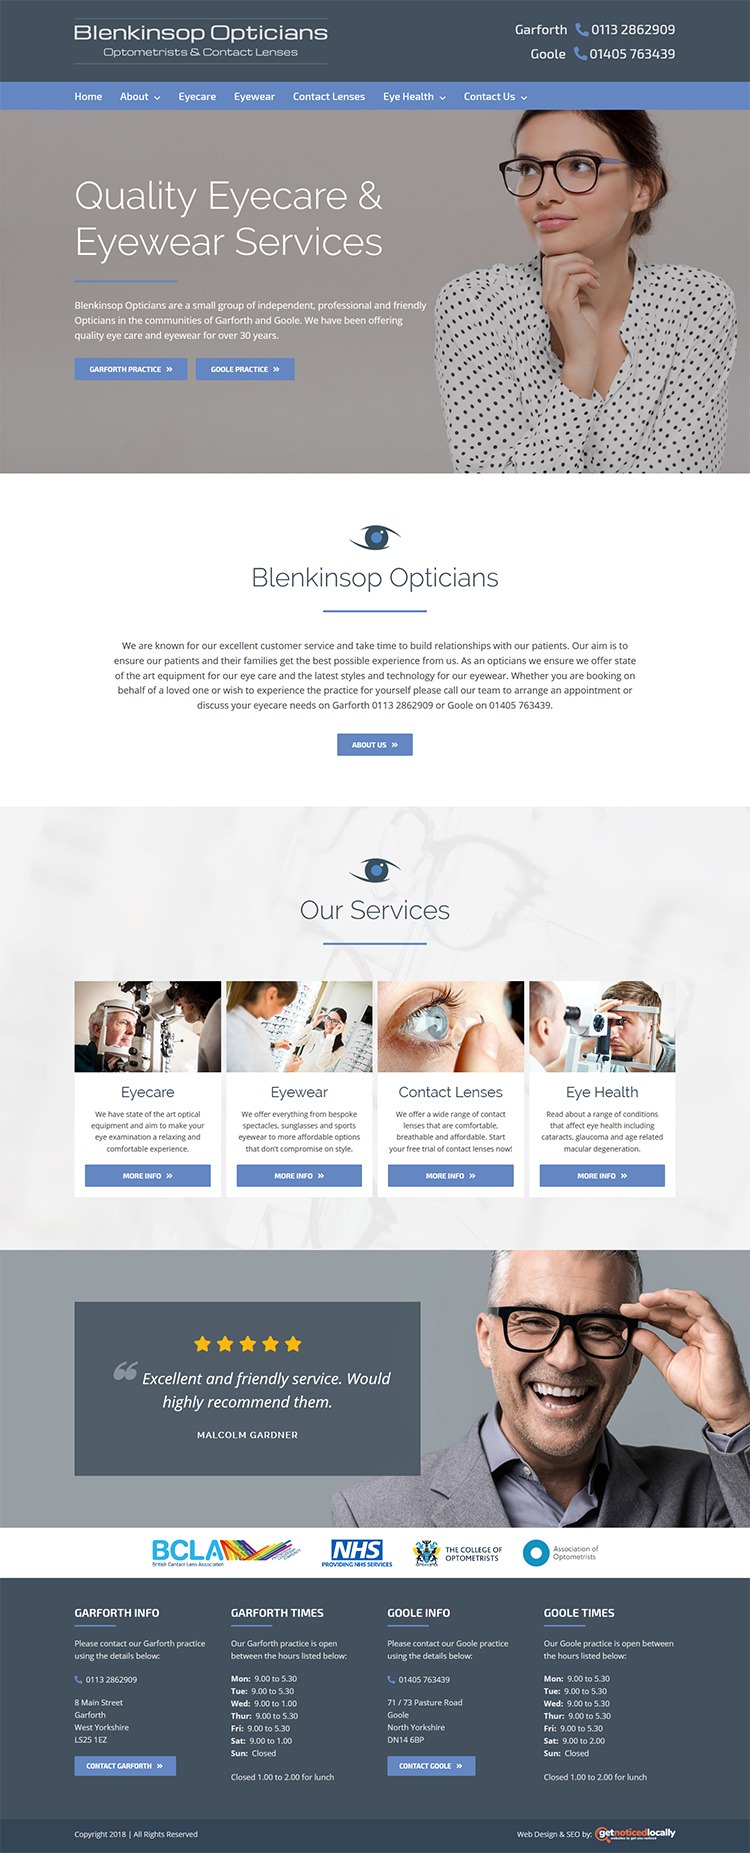 Blenkinstop Opticians Website